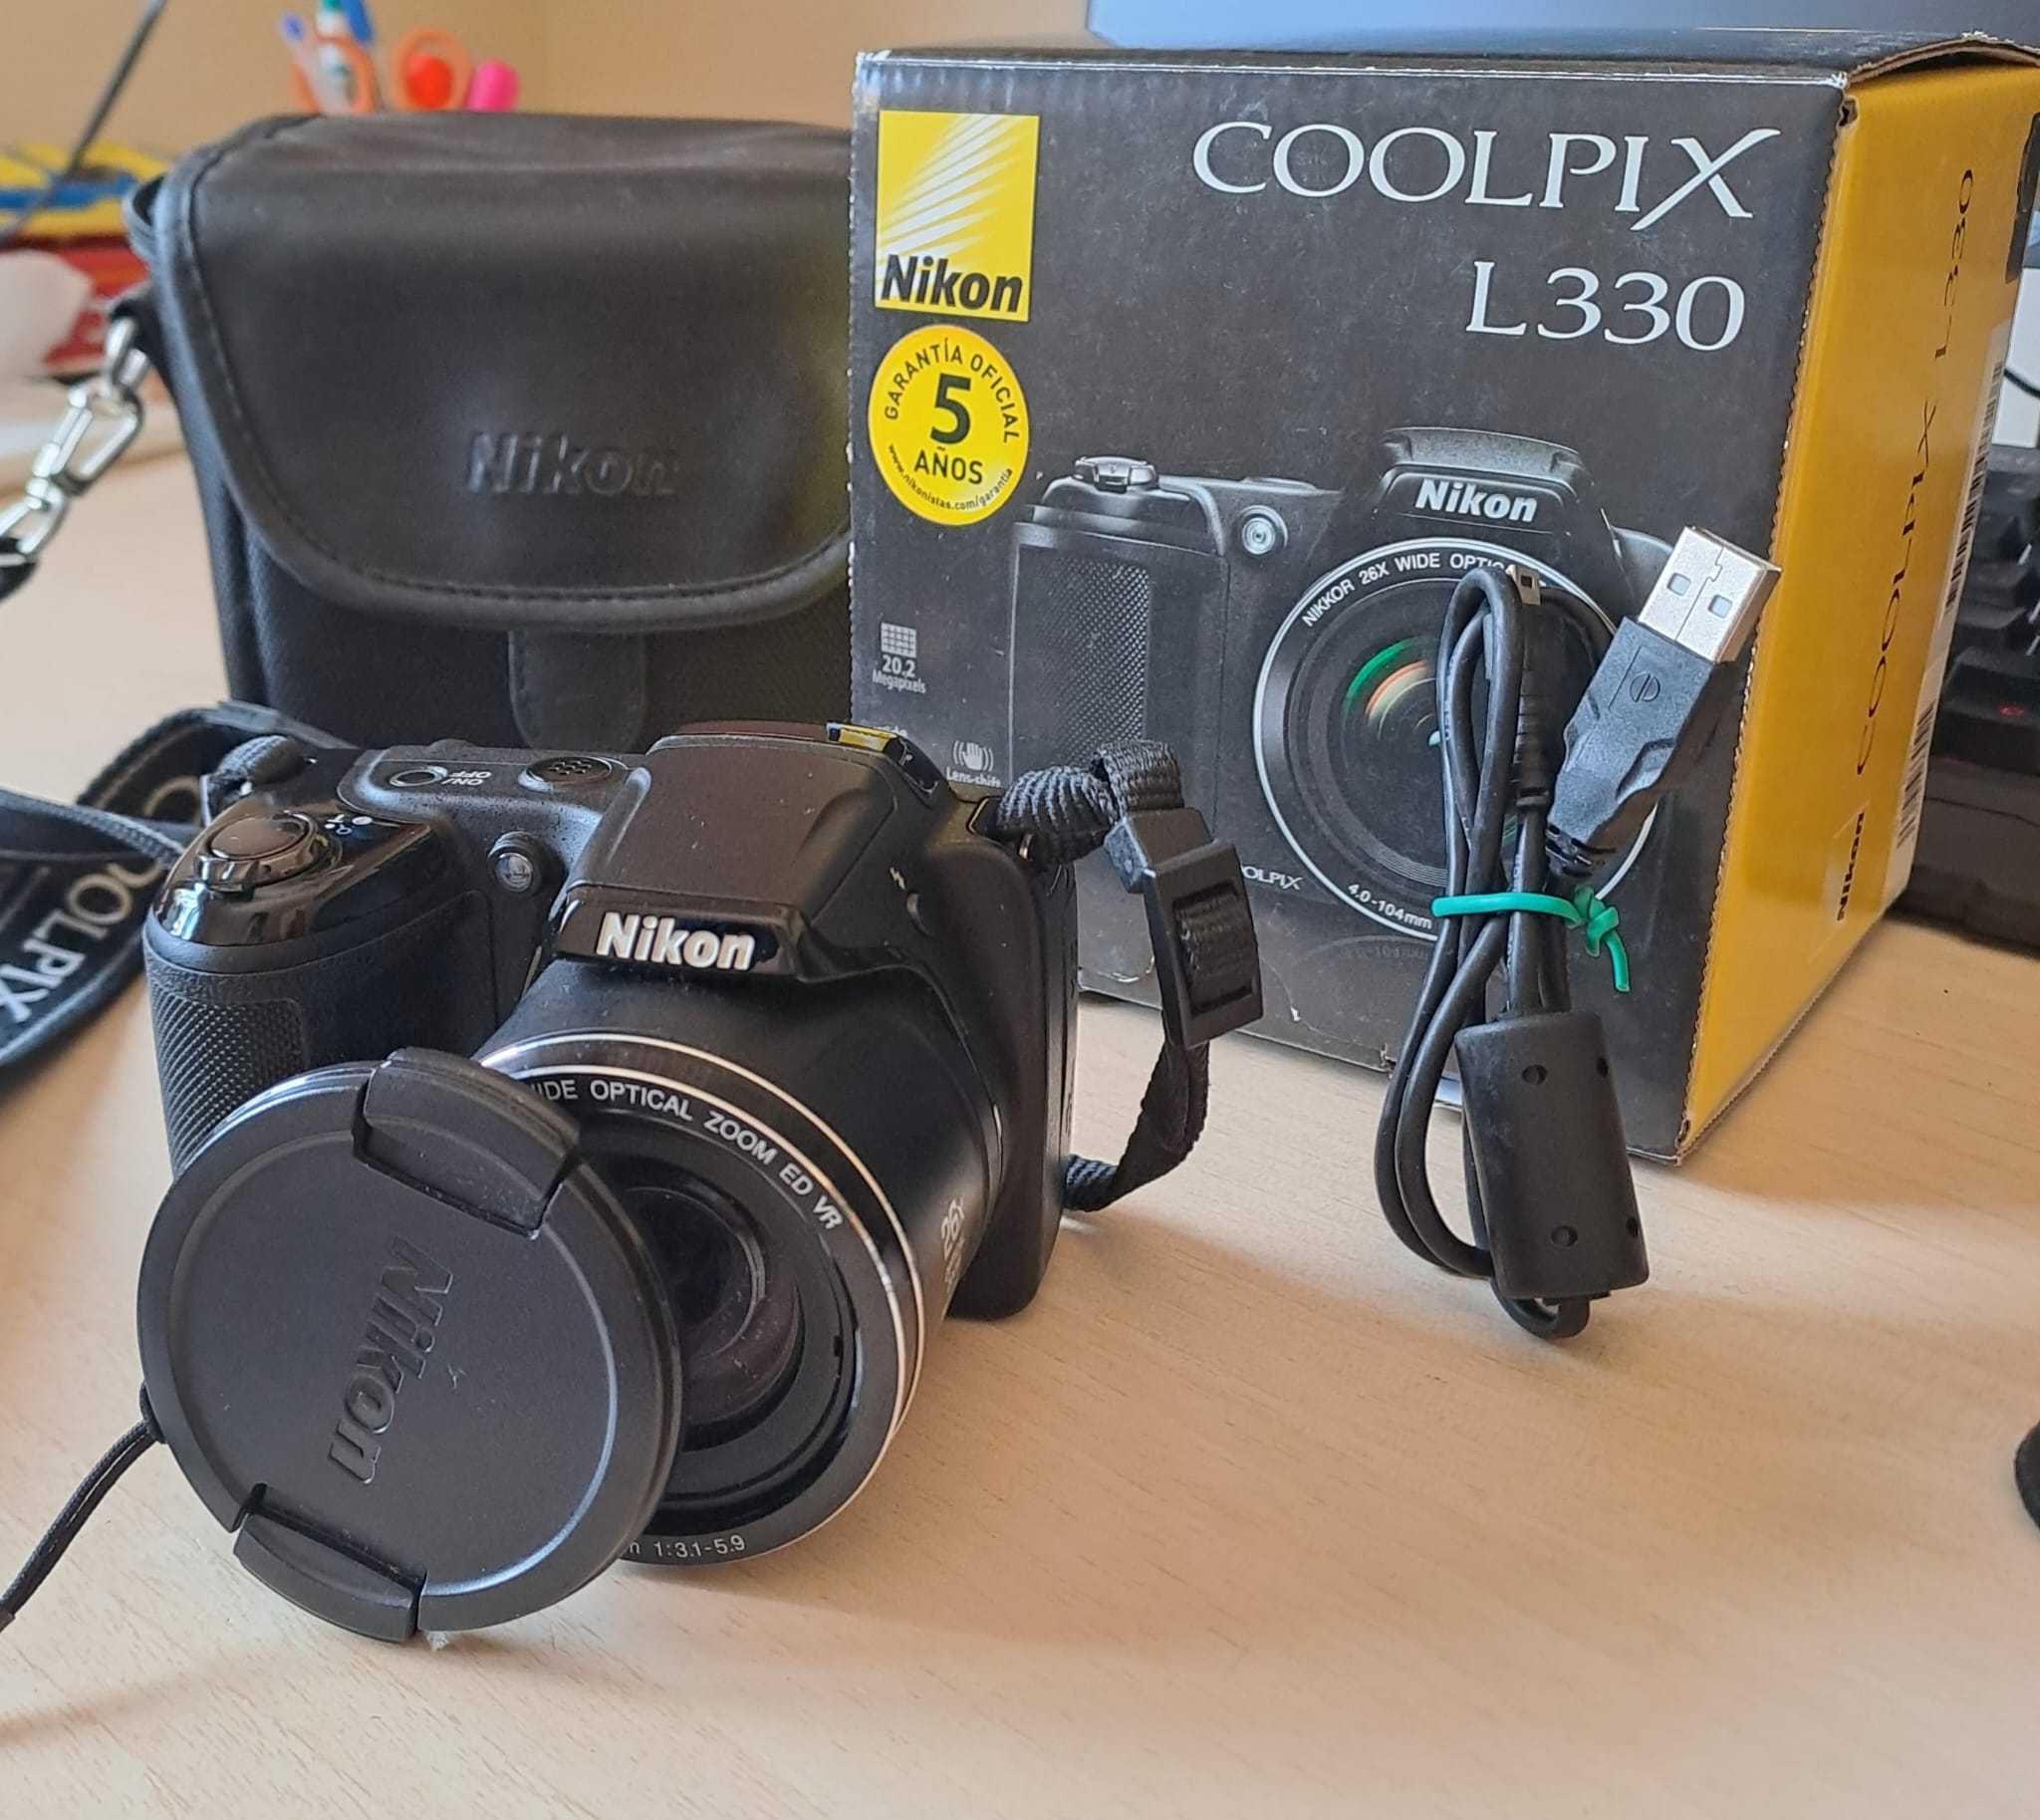 Nikon coolpix L330